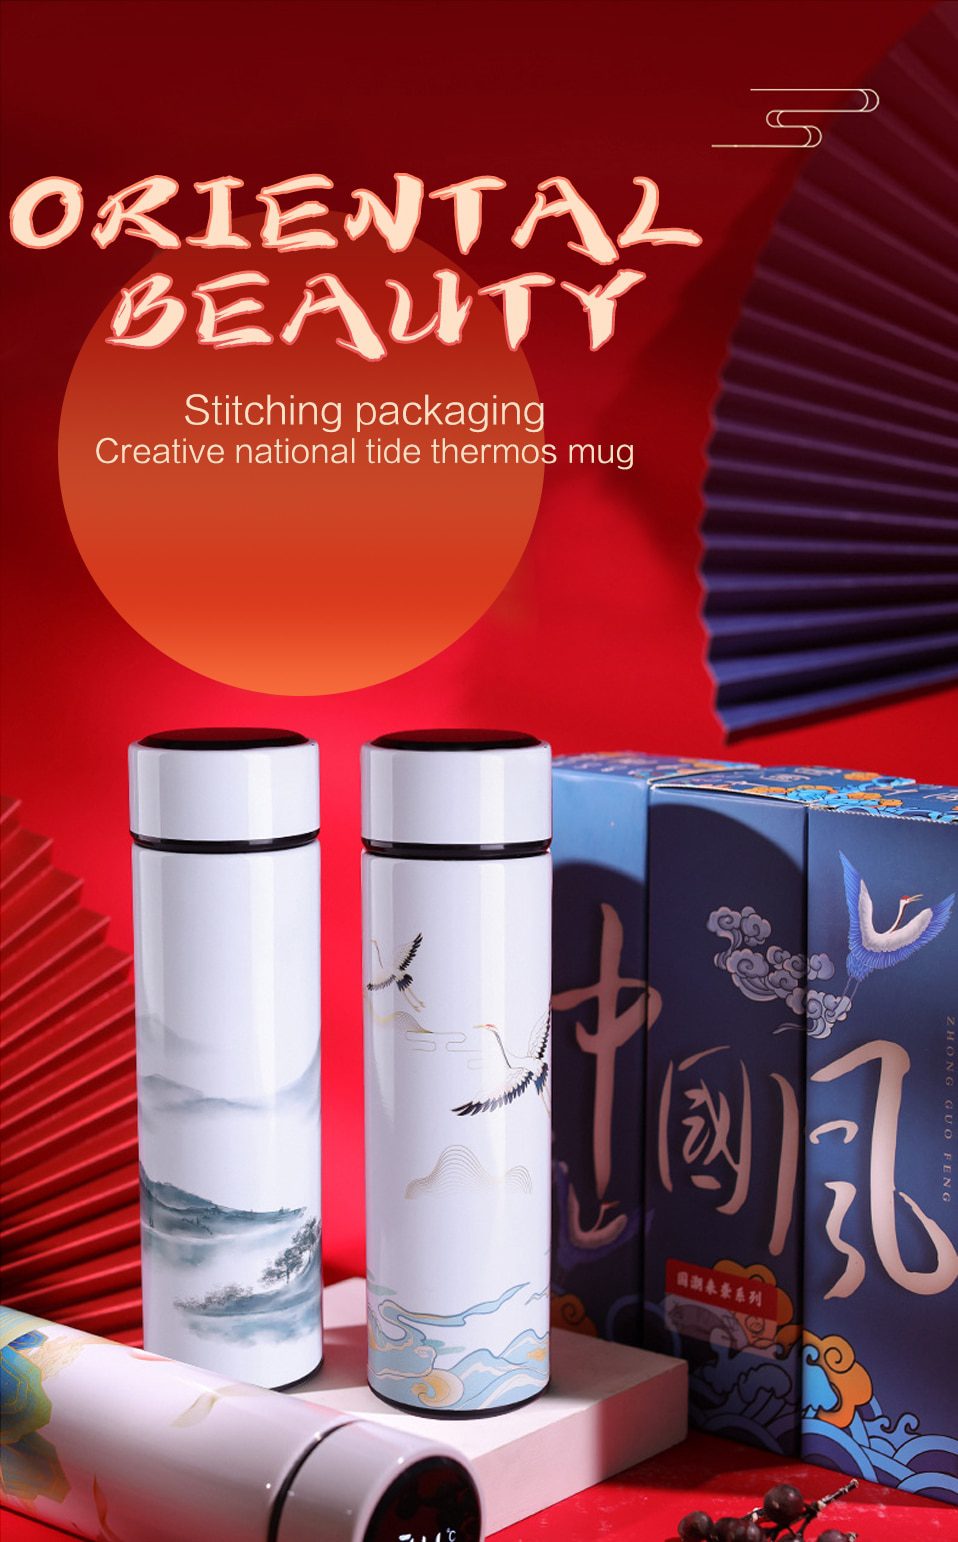 NEW Steel 450ML Creative Style LED Vacuum Flasks Coffee Mug Water Bottle Temperature Display Thermos Tea Milk Mug